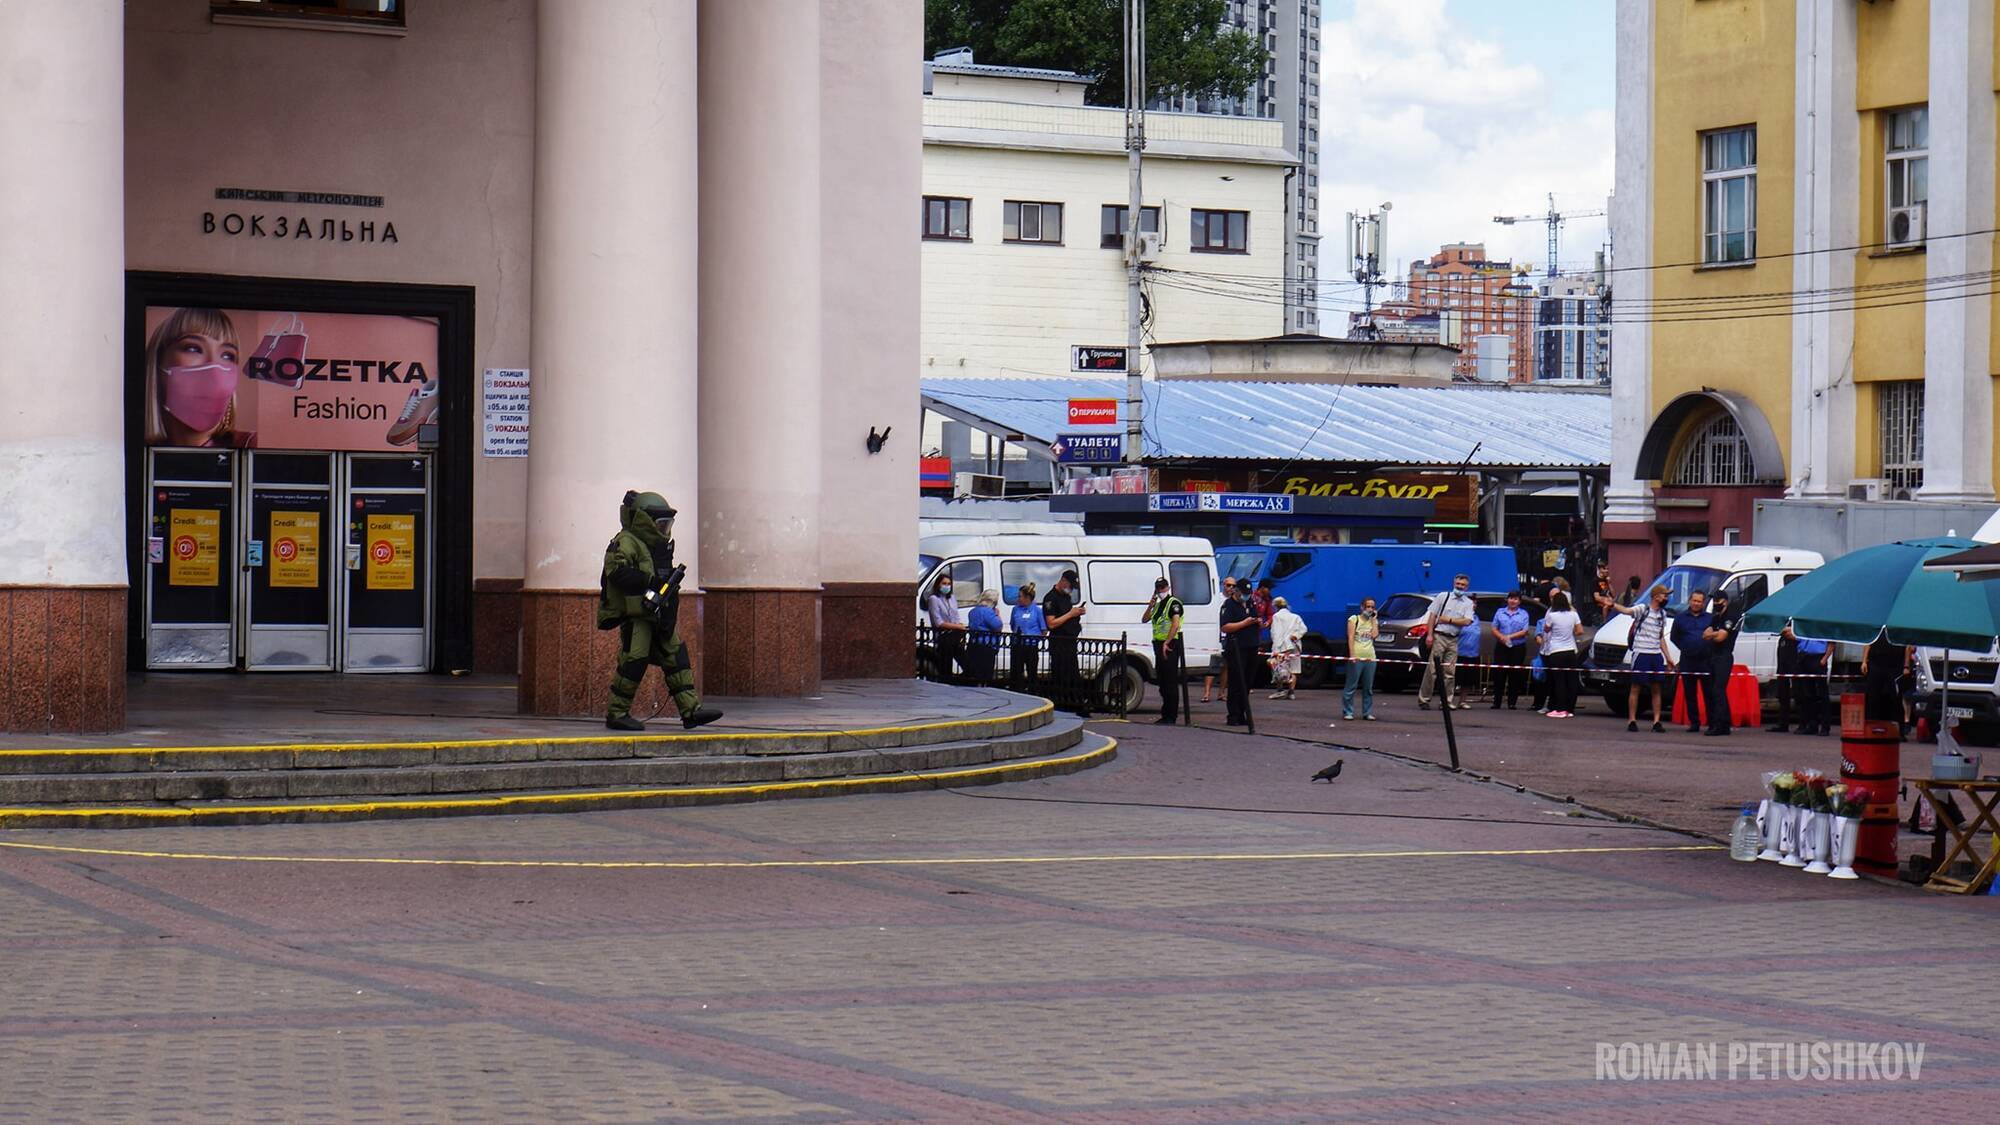 Работа взрывотехников возле метро "Вокзальная".